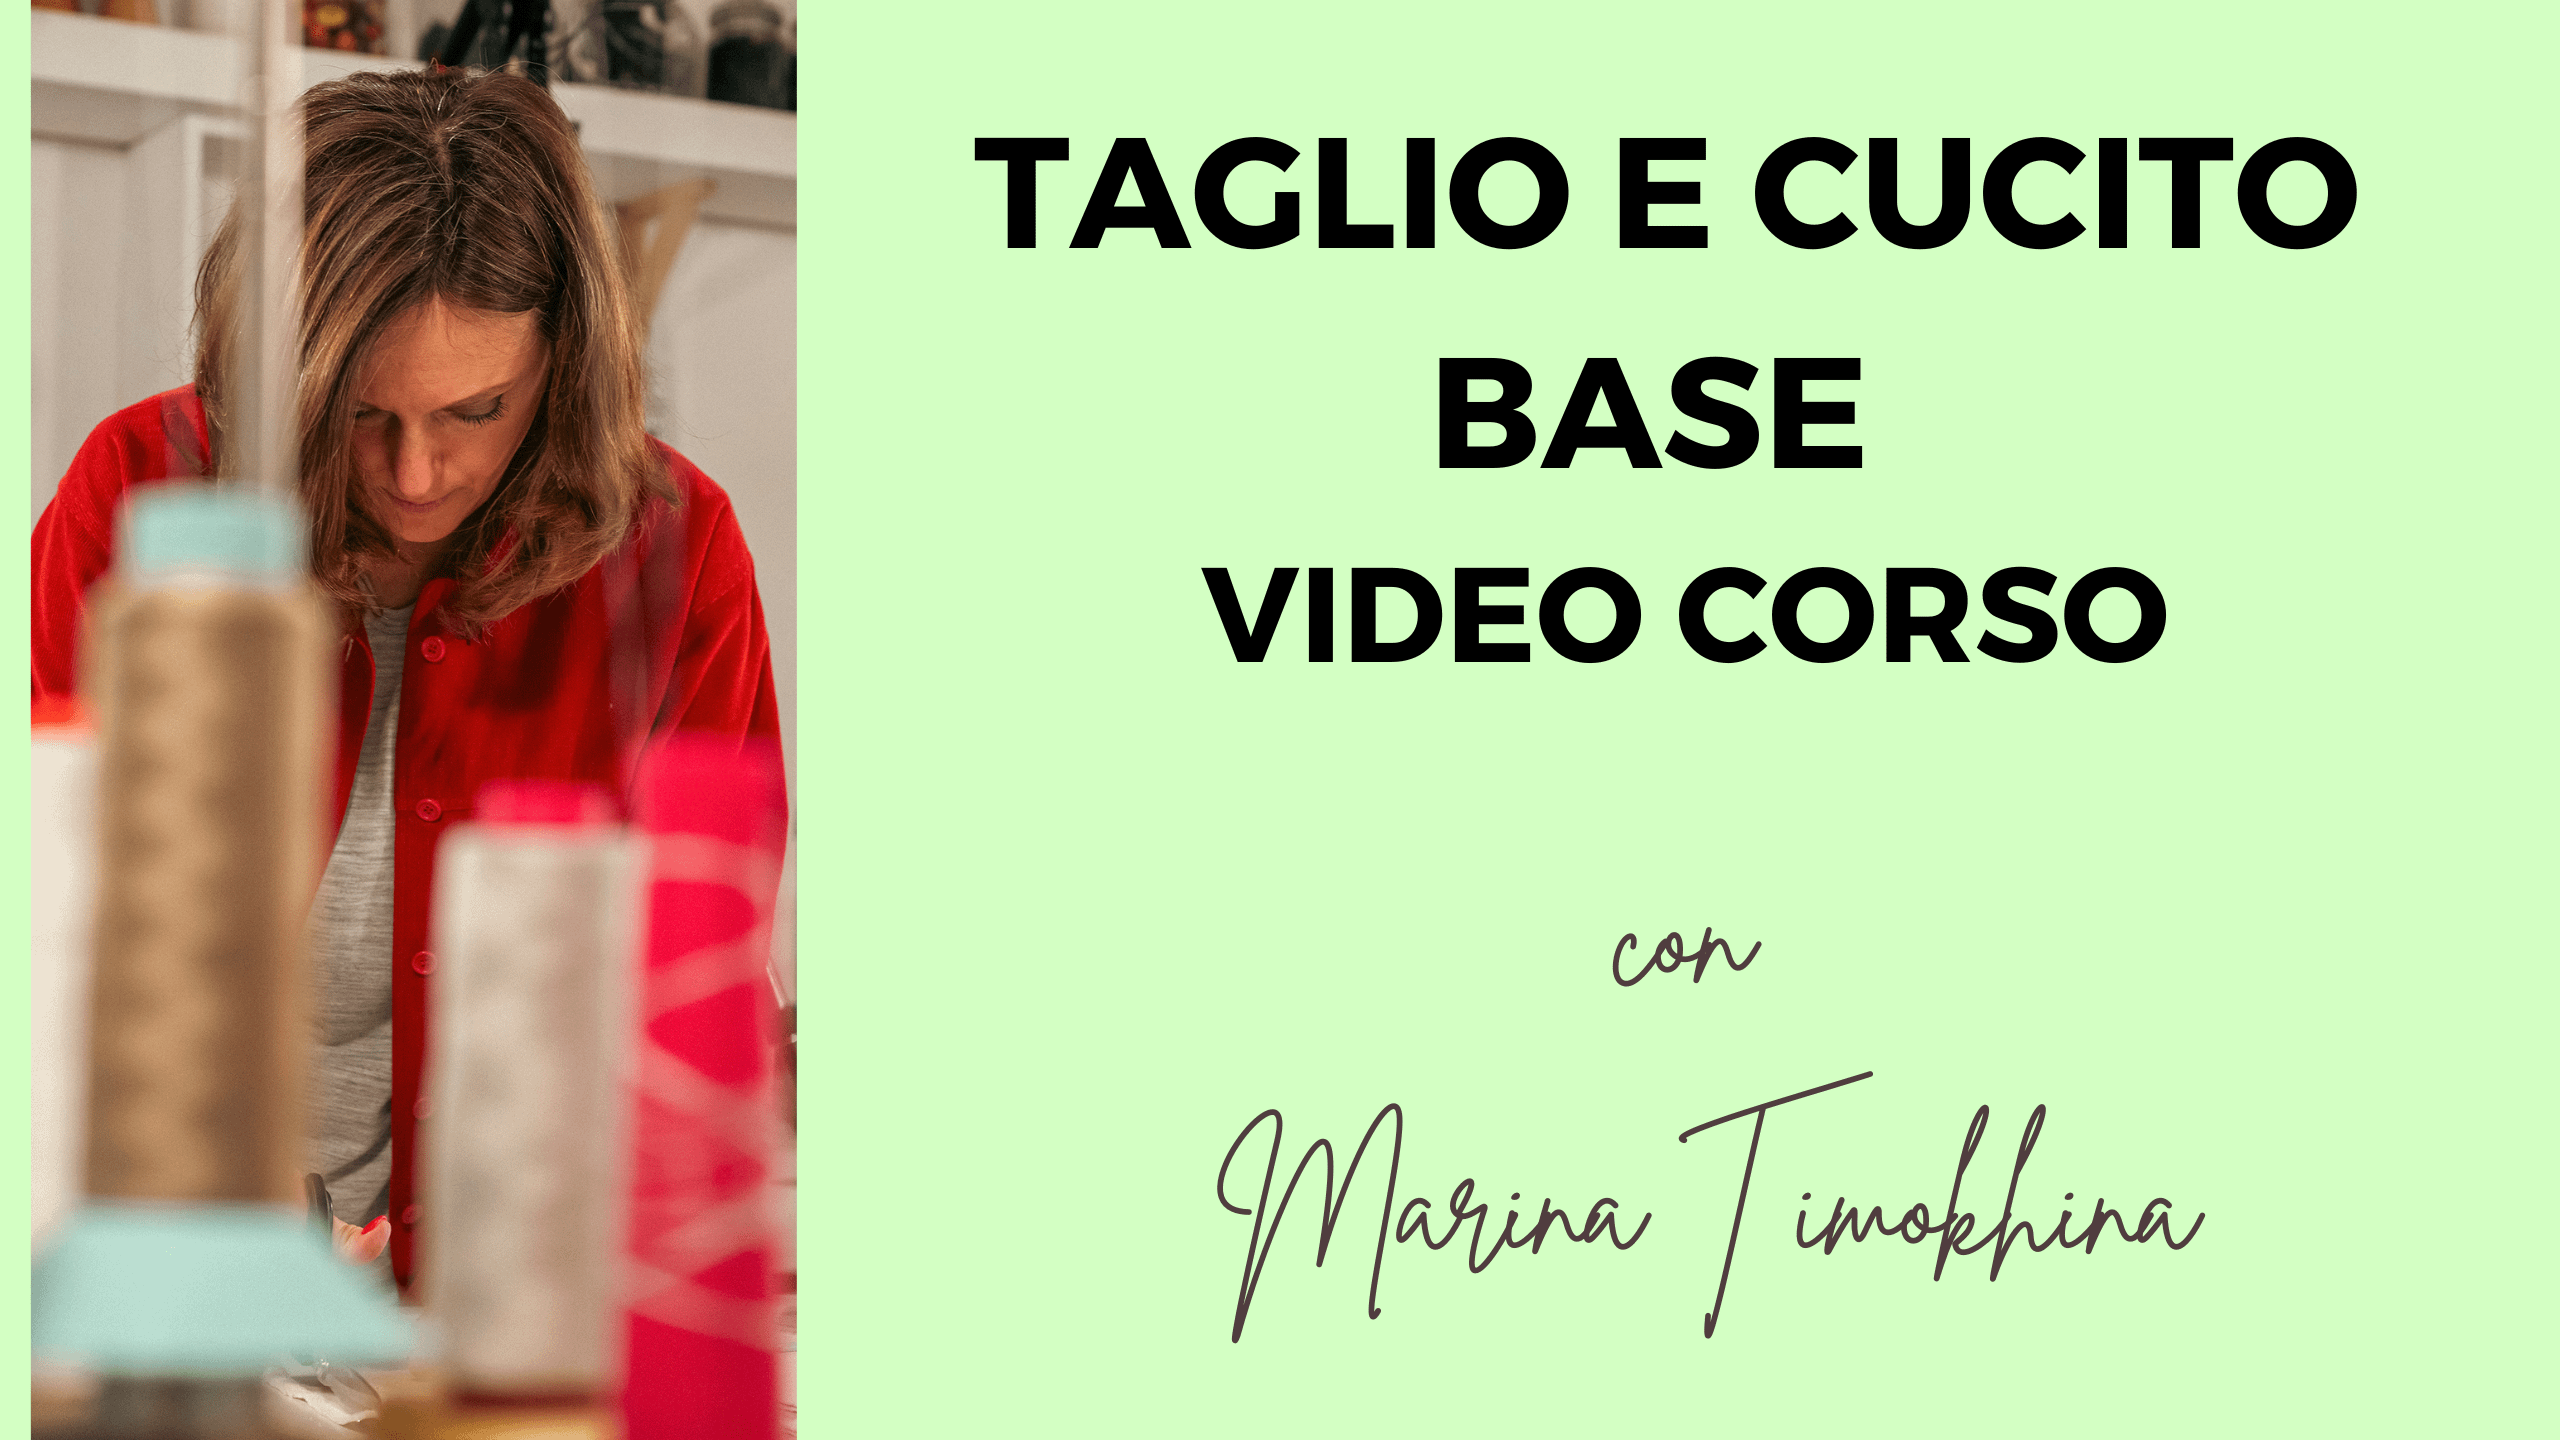 TAGLIO E CUCITO BASE | VIDEO CORSO ONLINE